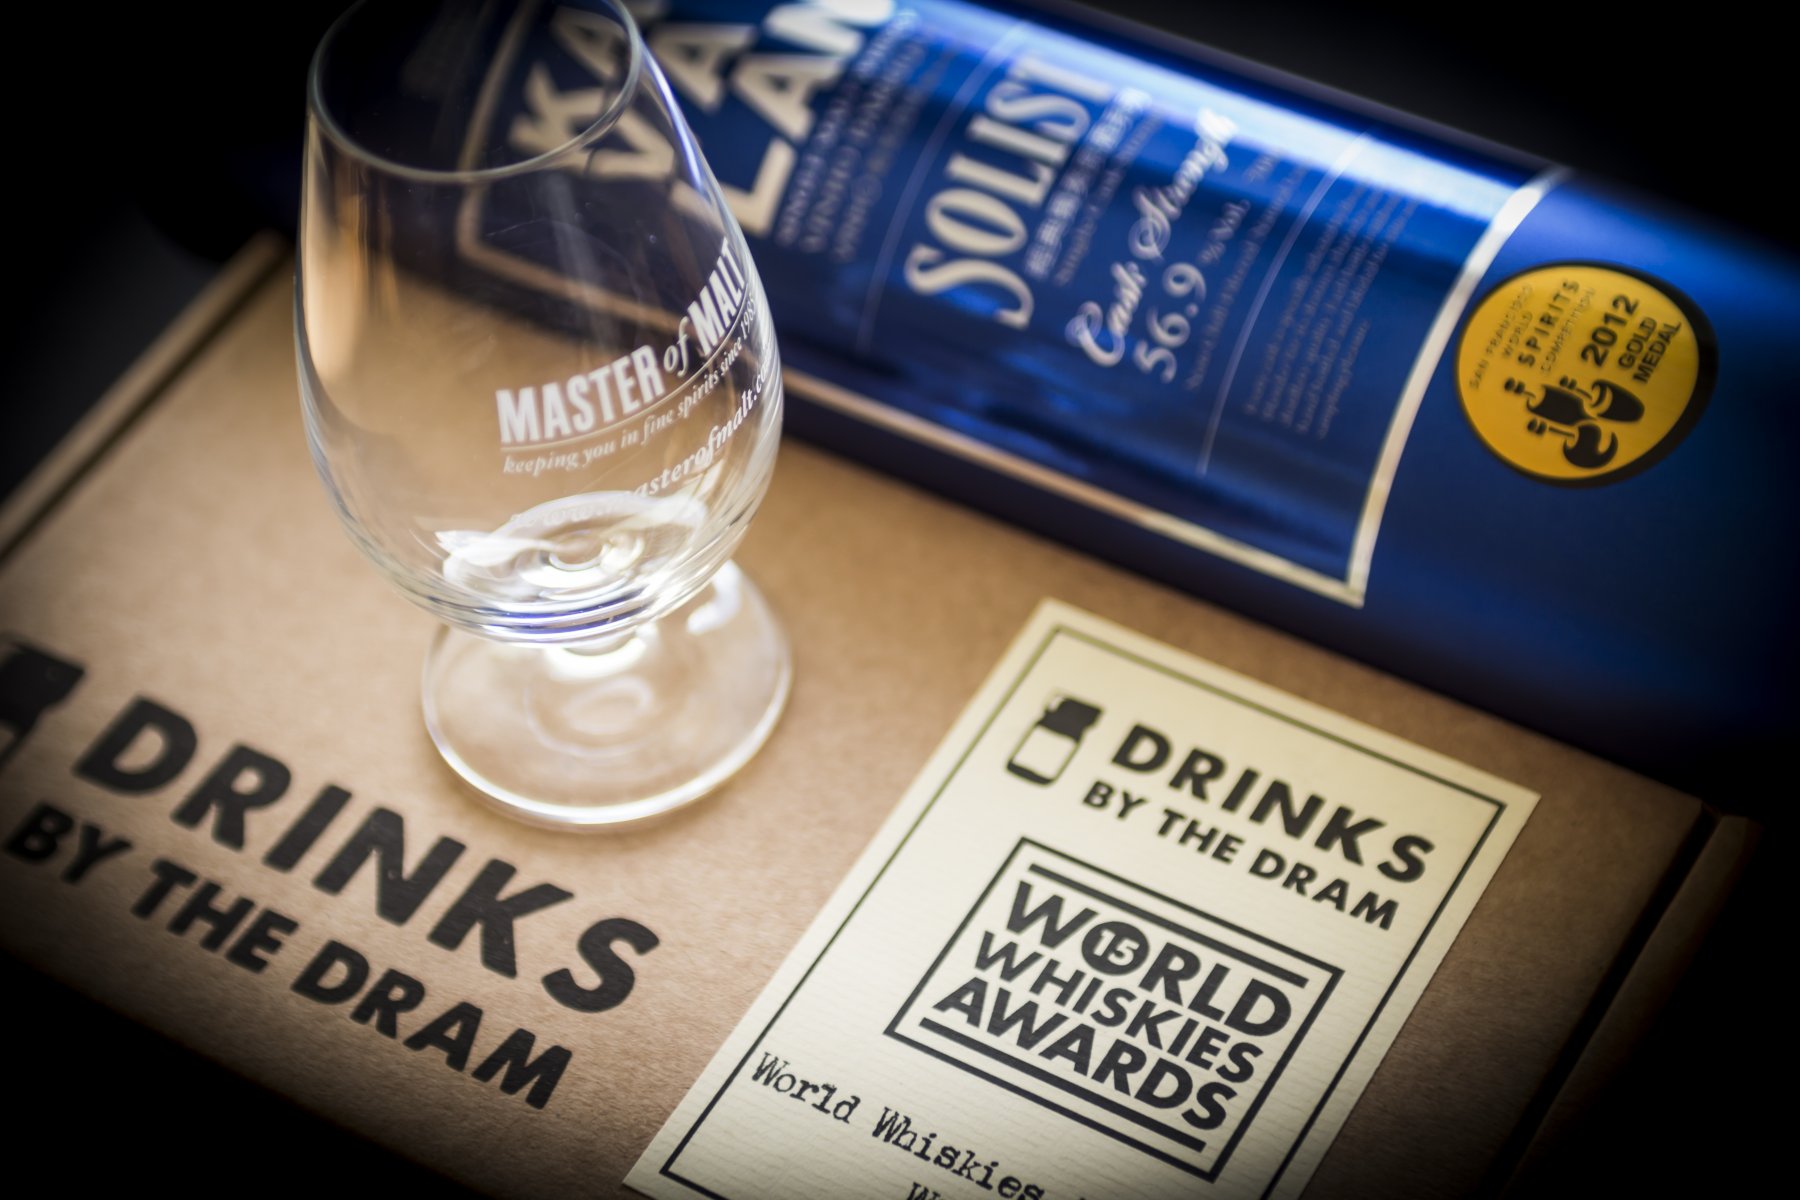 World Whisky Awards 2015